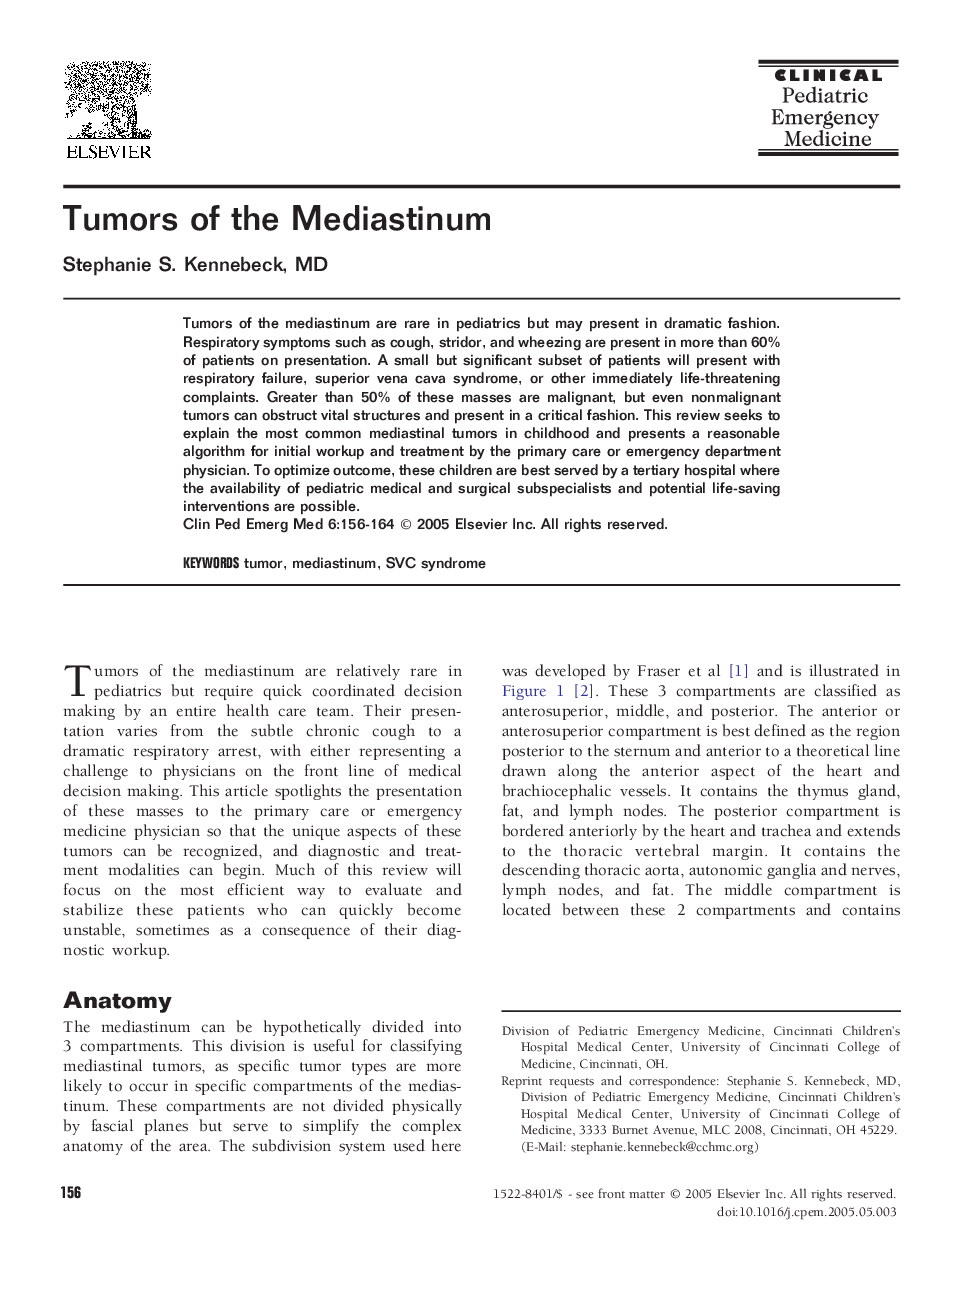 Tumors of the Mediastinum